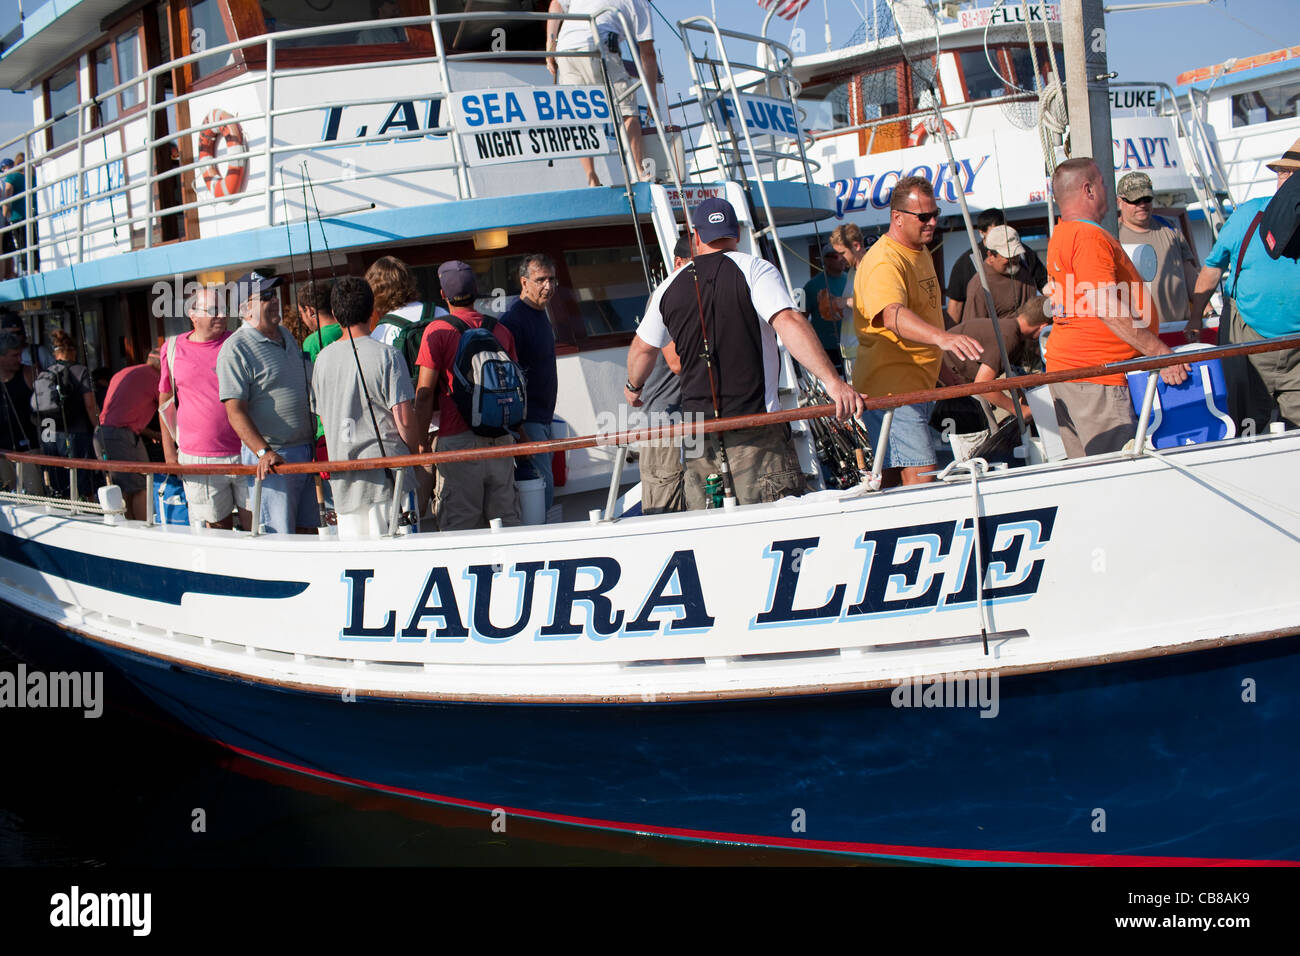 Los pescadores desembarcar del barco fiesta 'Laura Lee' después de un viaje de media tarde en la costa oeste de Islip, Nueva York. Foto de stock